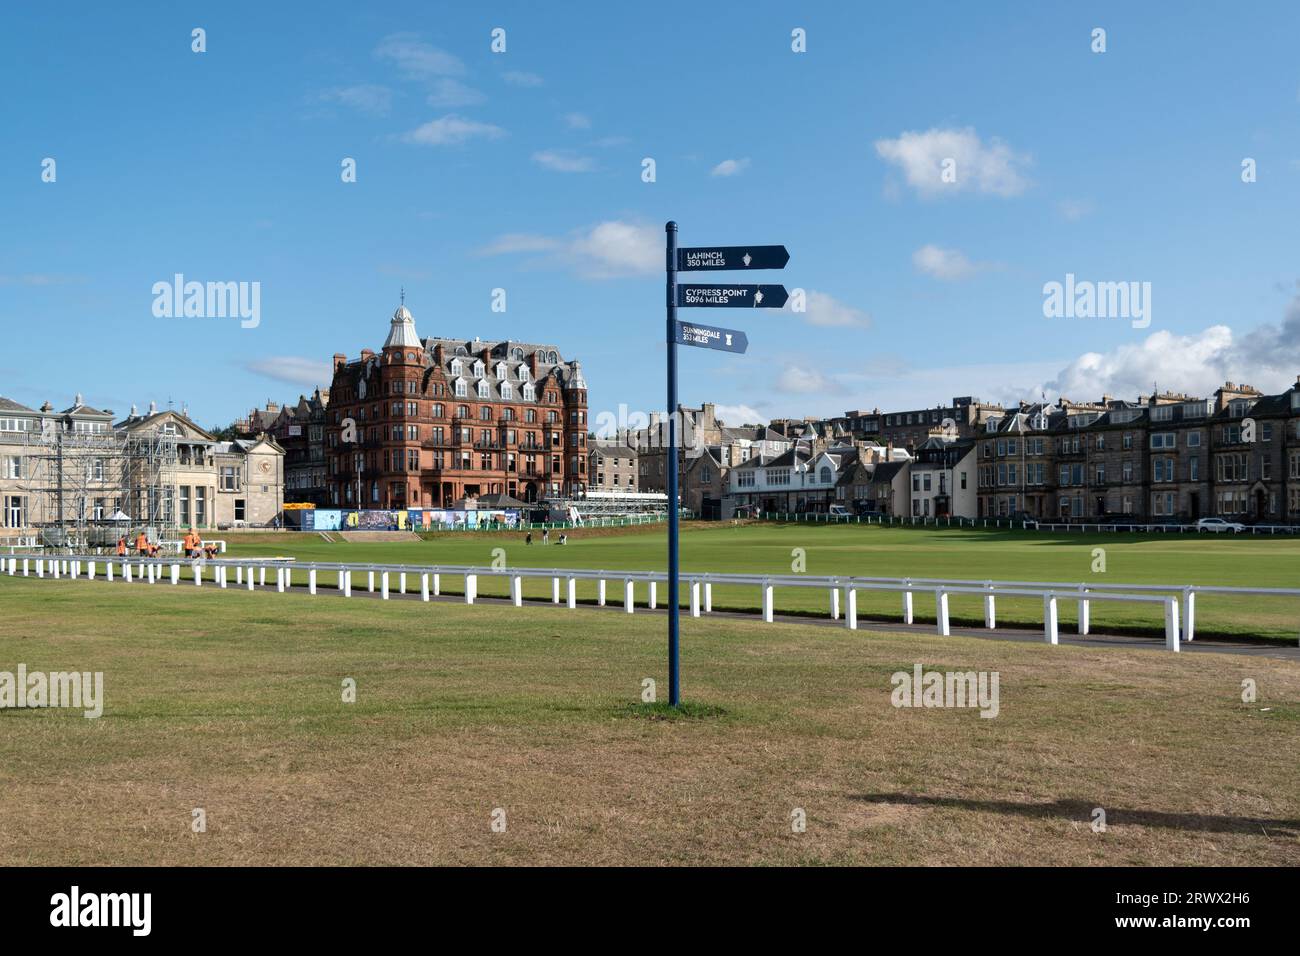 Parcours de golf de St Andrews - connu sous le nom de Old course dans la ville balnéaire populaire de Saint Andrews au nord-est d'Édimbourg, en Écosse. Banque D'Images